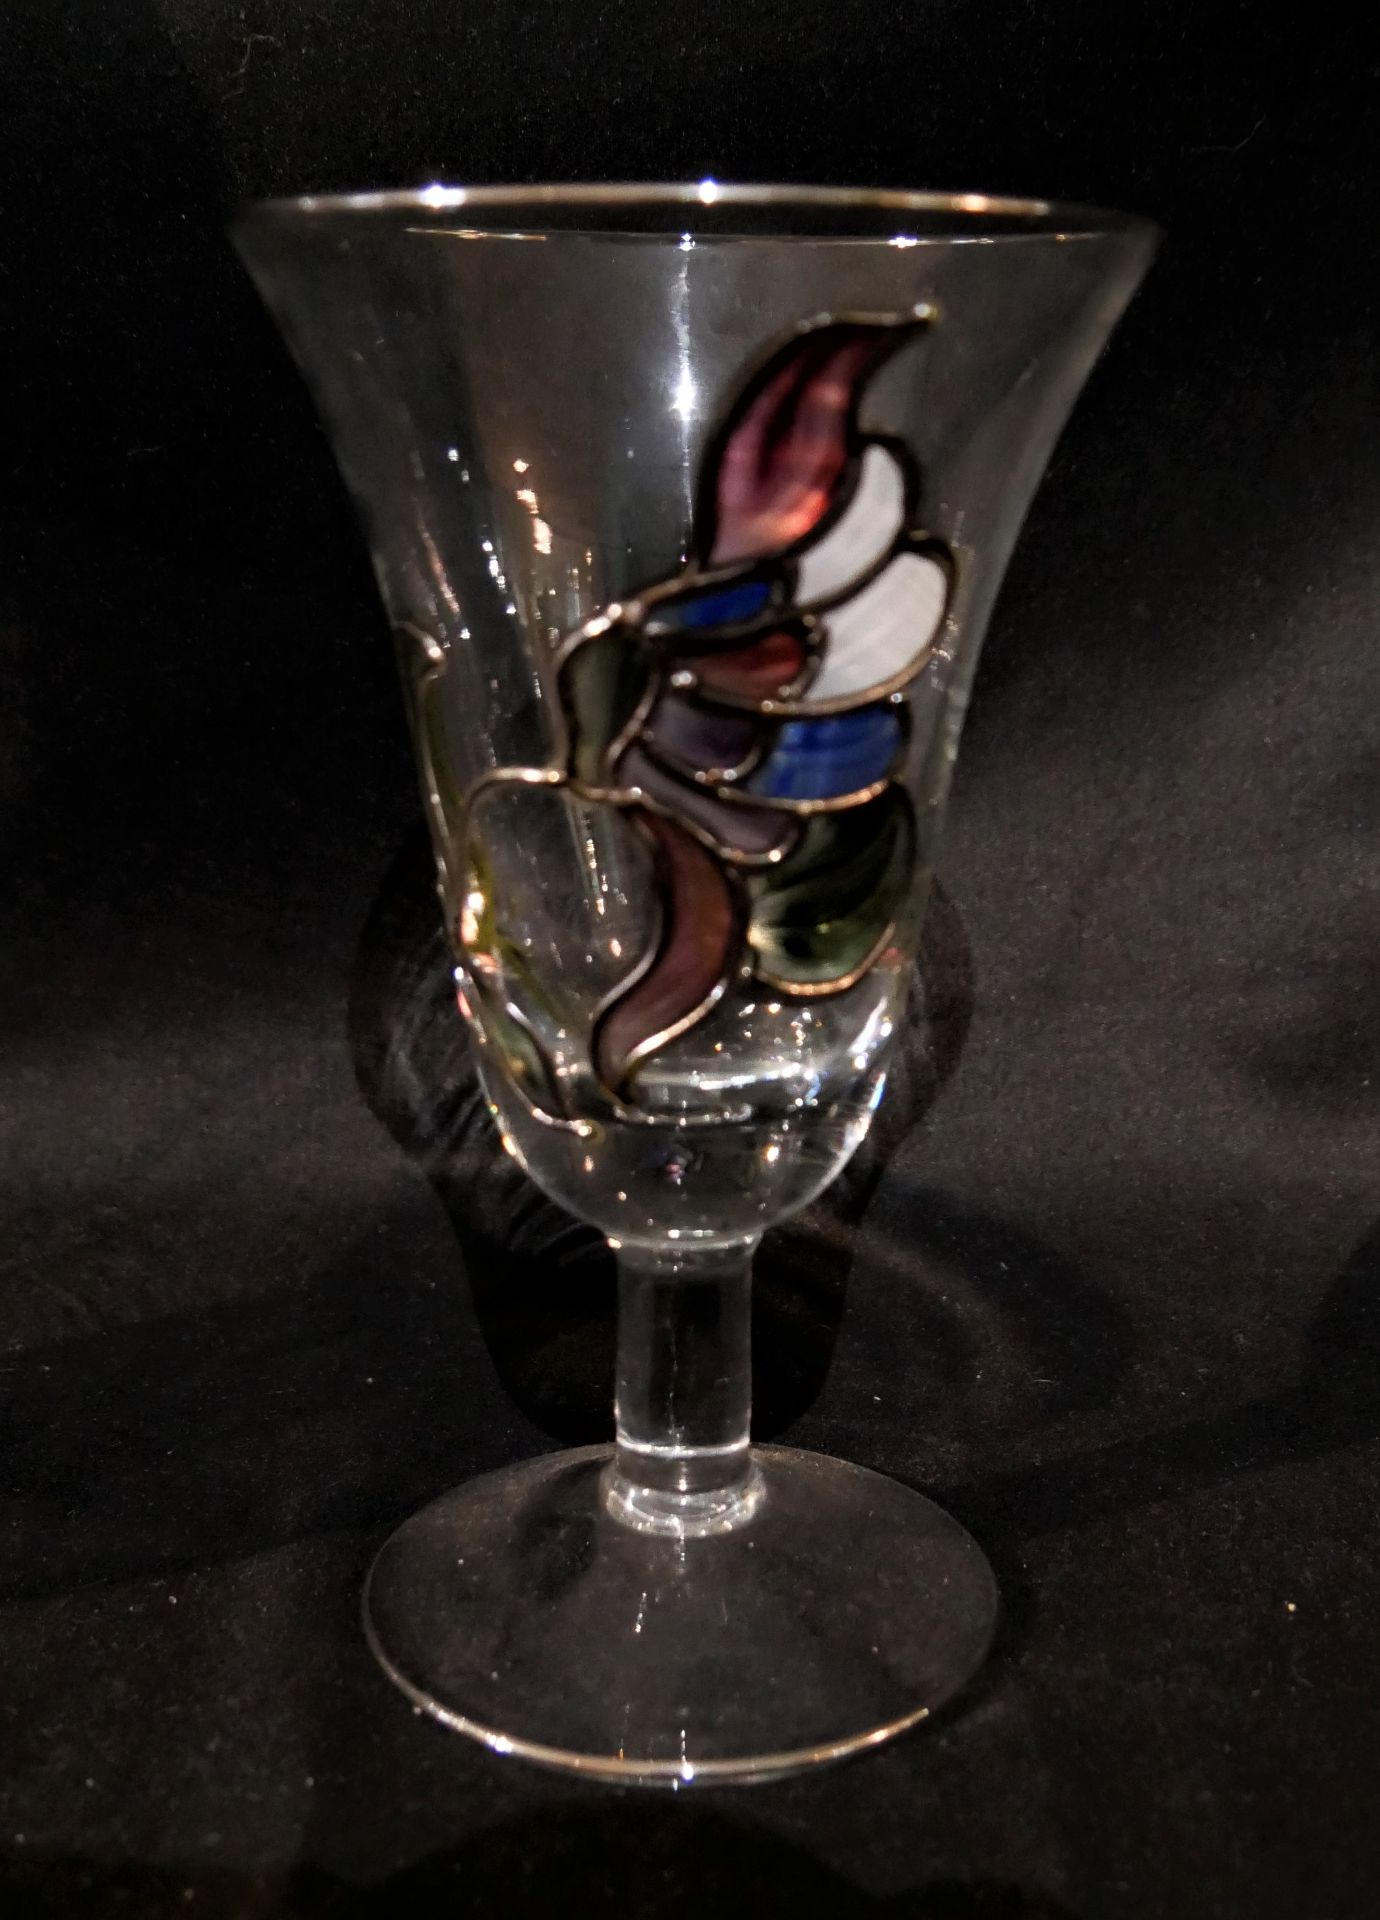 Glaskaraffe mit 3 Gläser. Mit Emaille verziert. - Image 3 of 3